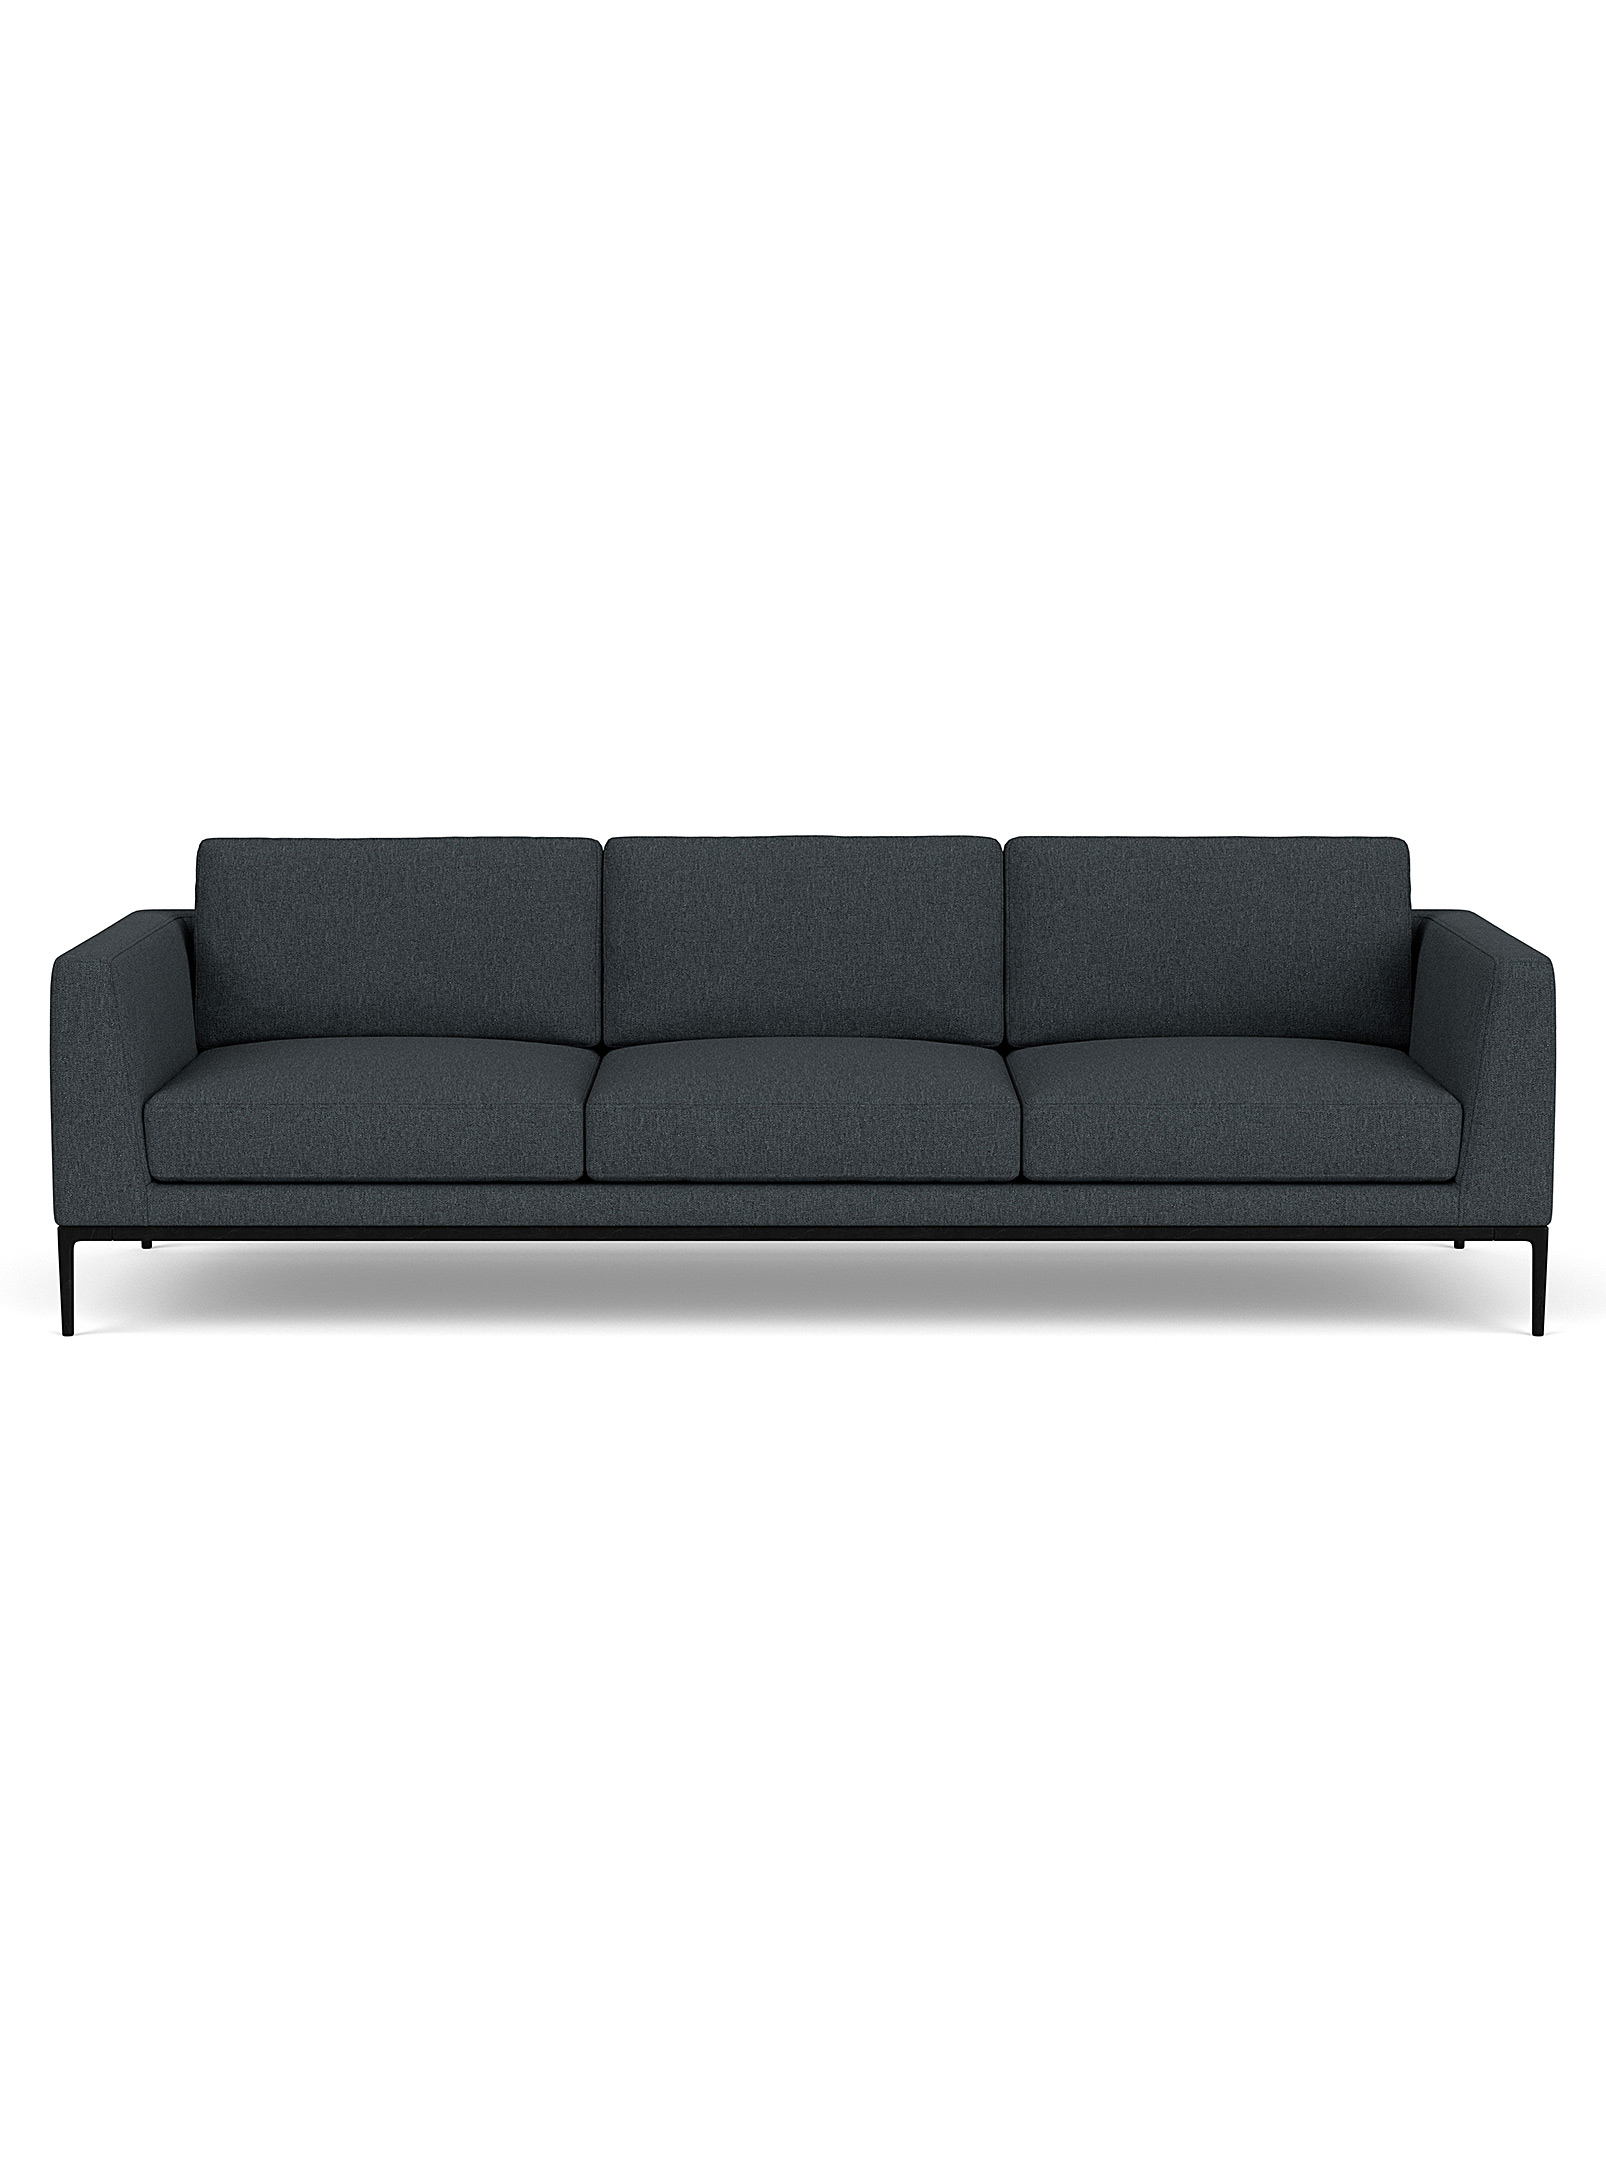 Eq3 Oma Sleek Fabric Couch In Dark Grey